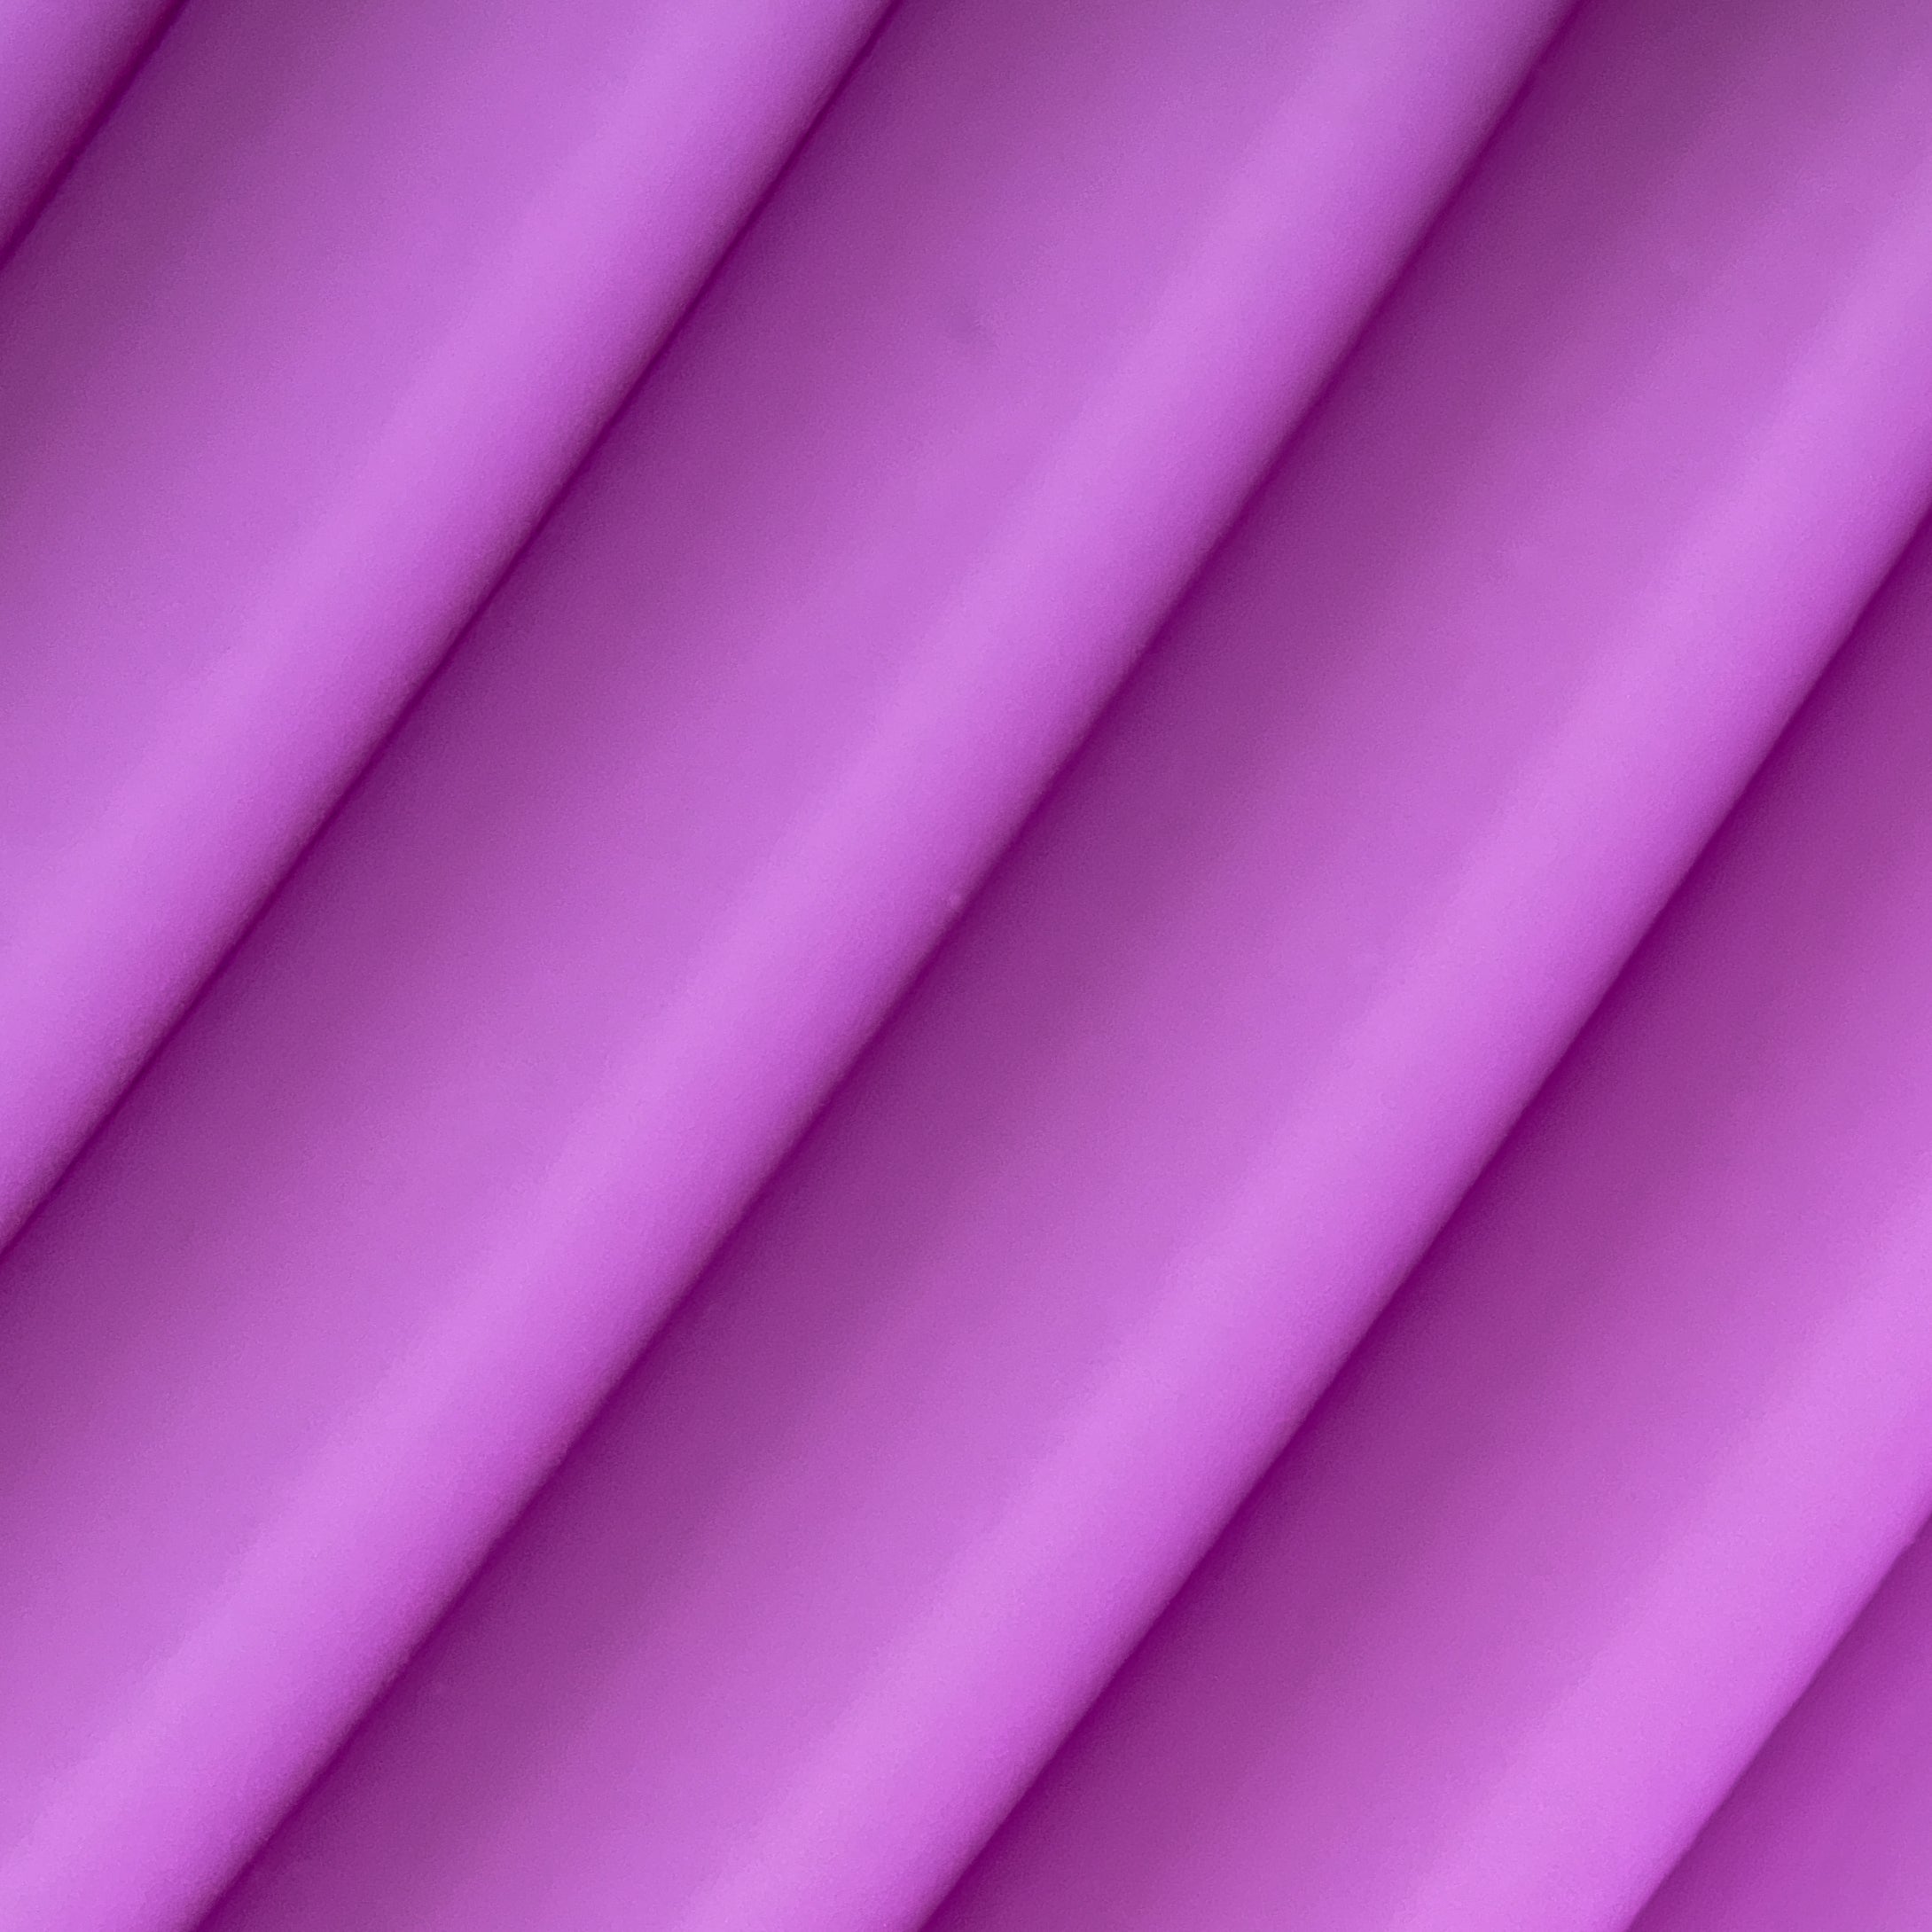 Lavender \ Purple PLA Filament 1.75mm, 1kg